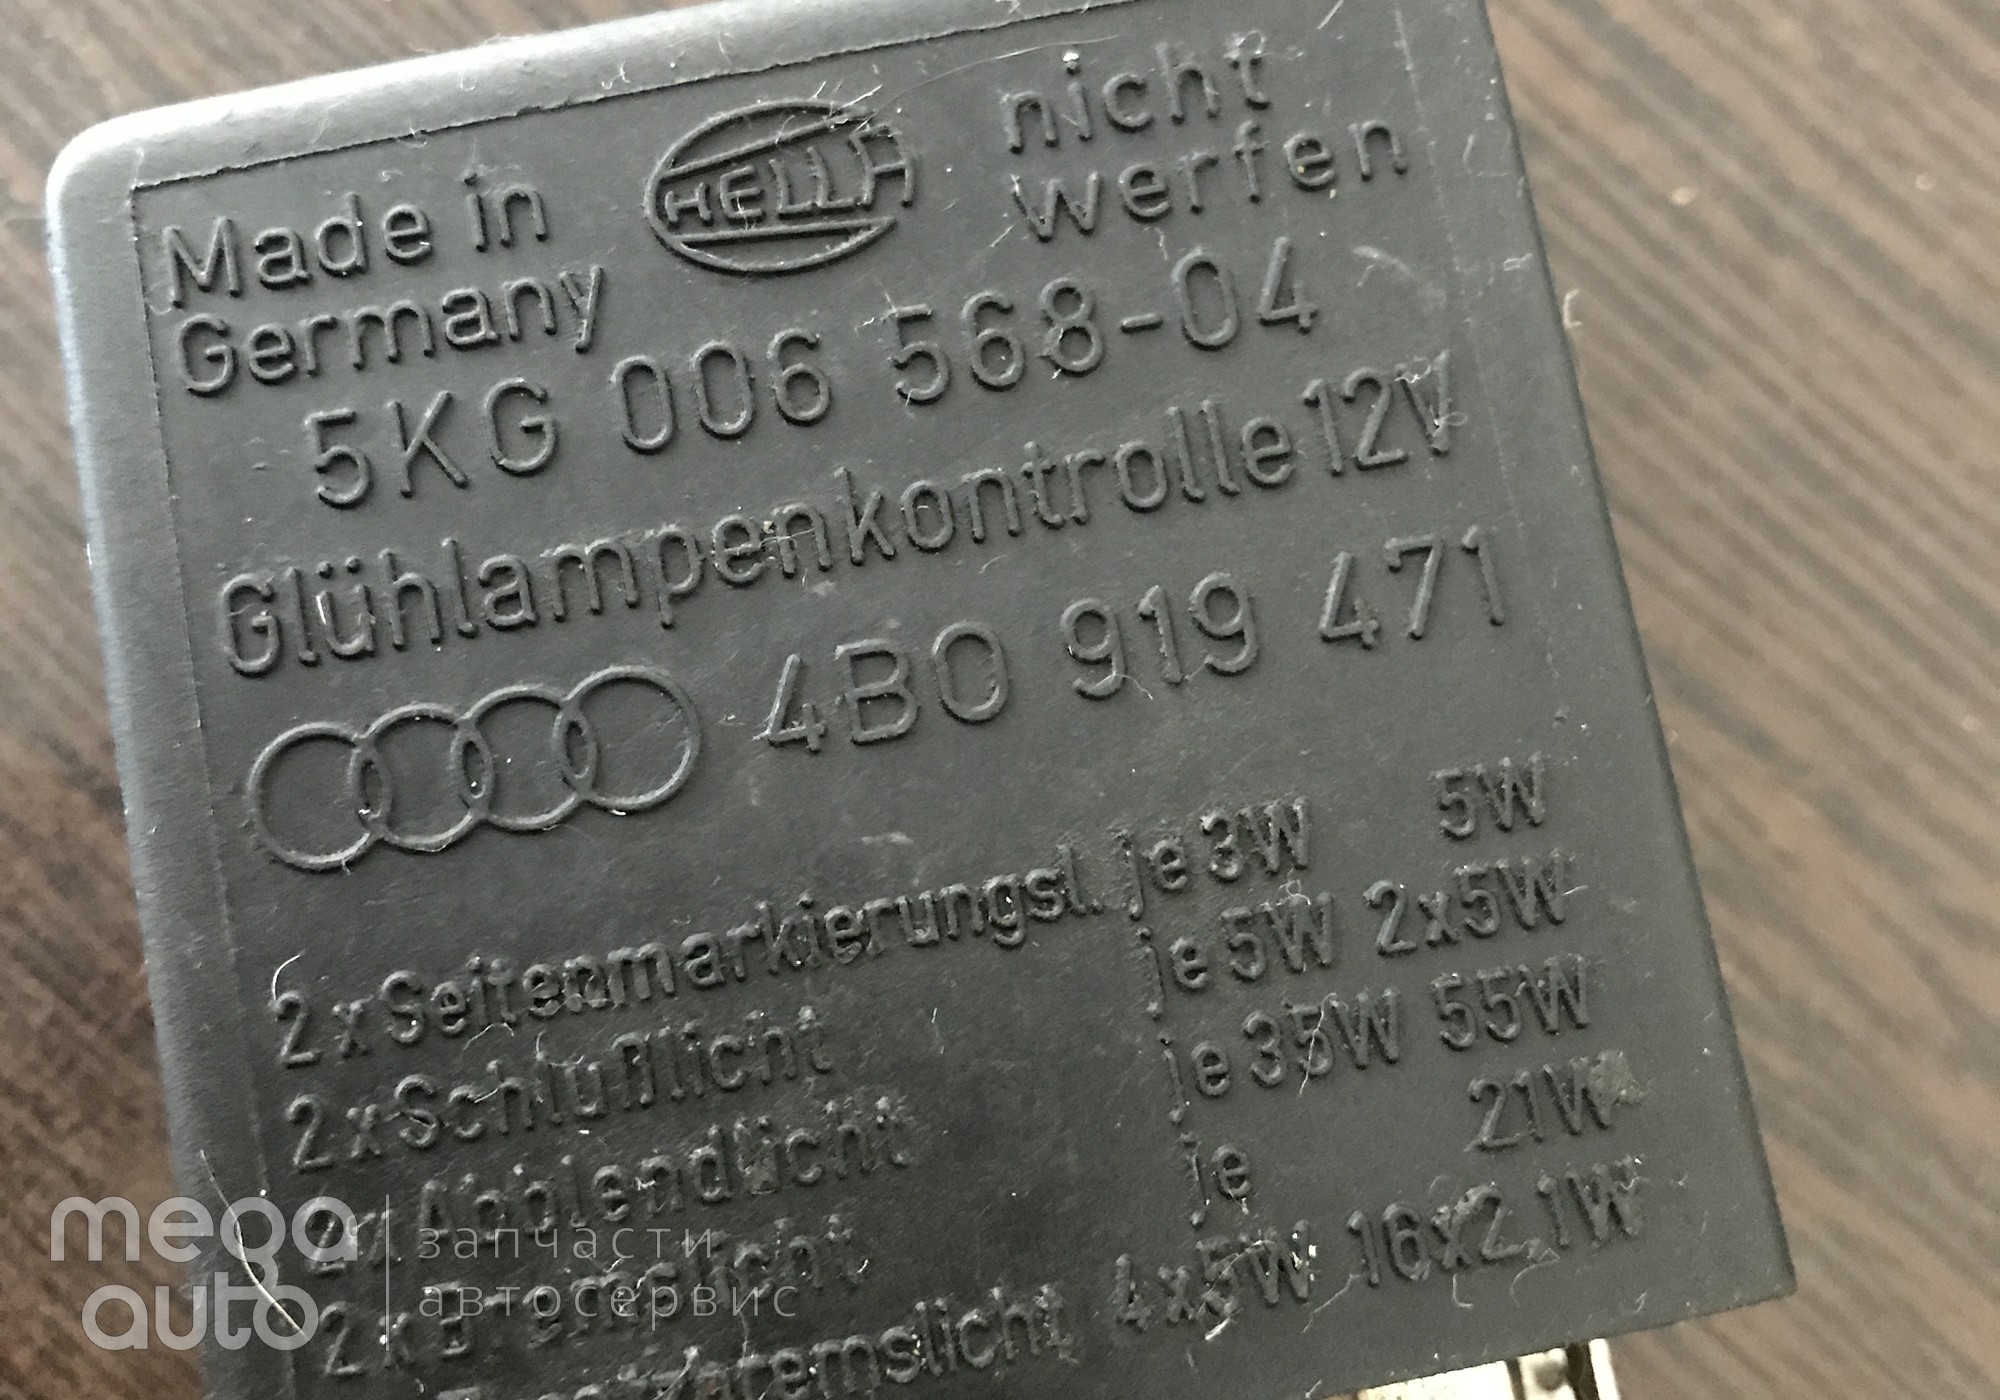 5KG00656804 Блок управления светом ауди для Audi A4 B5 (с 1994 по 2001)